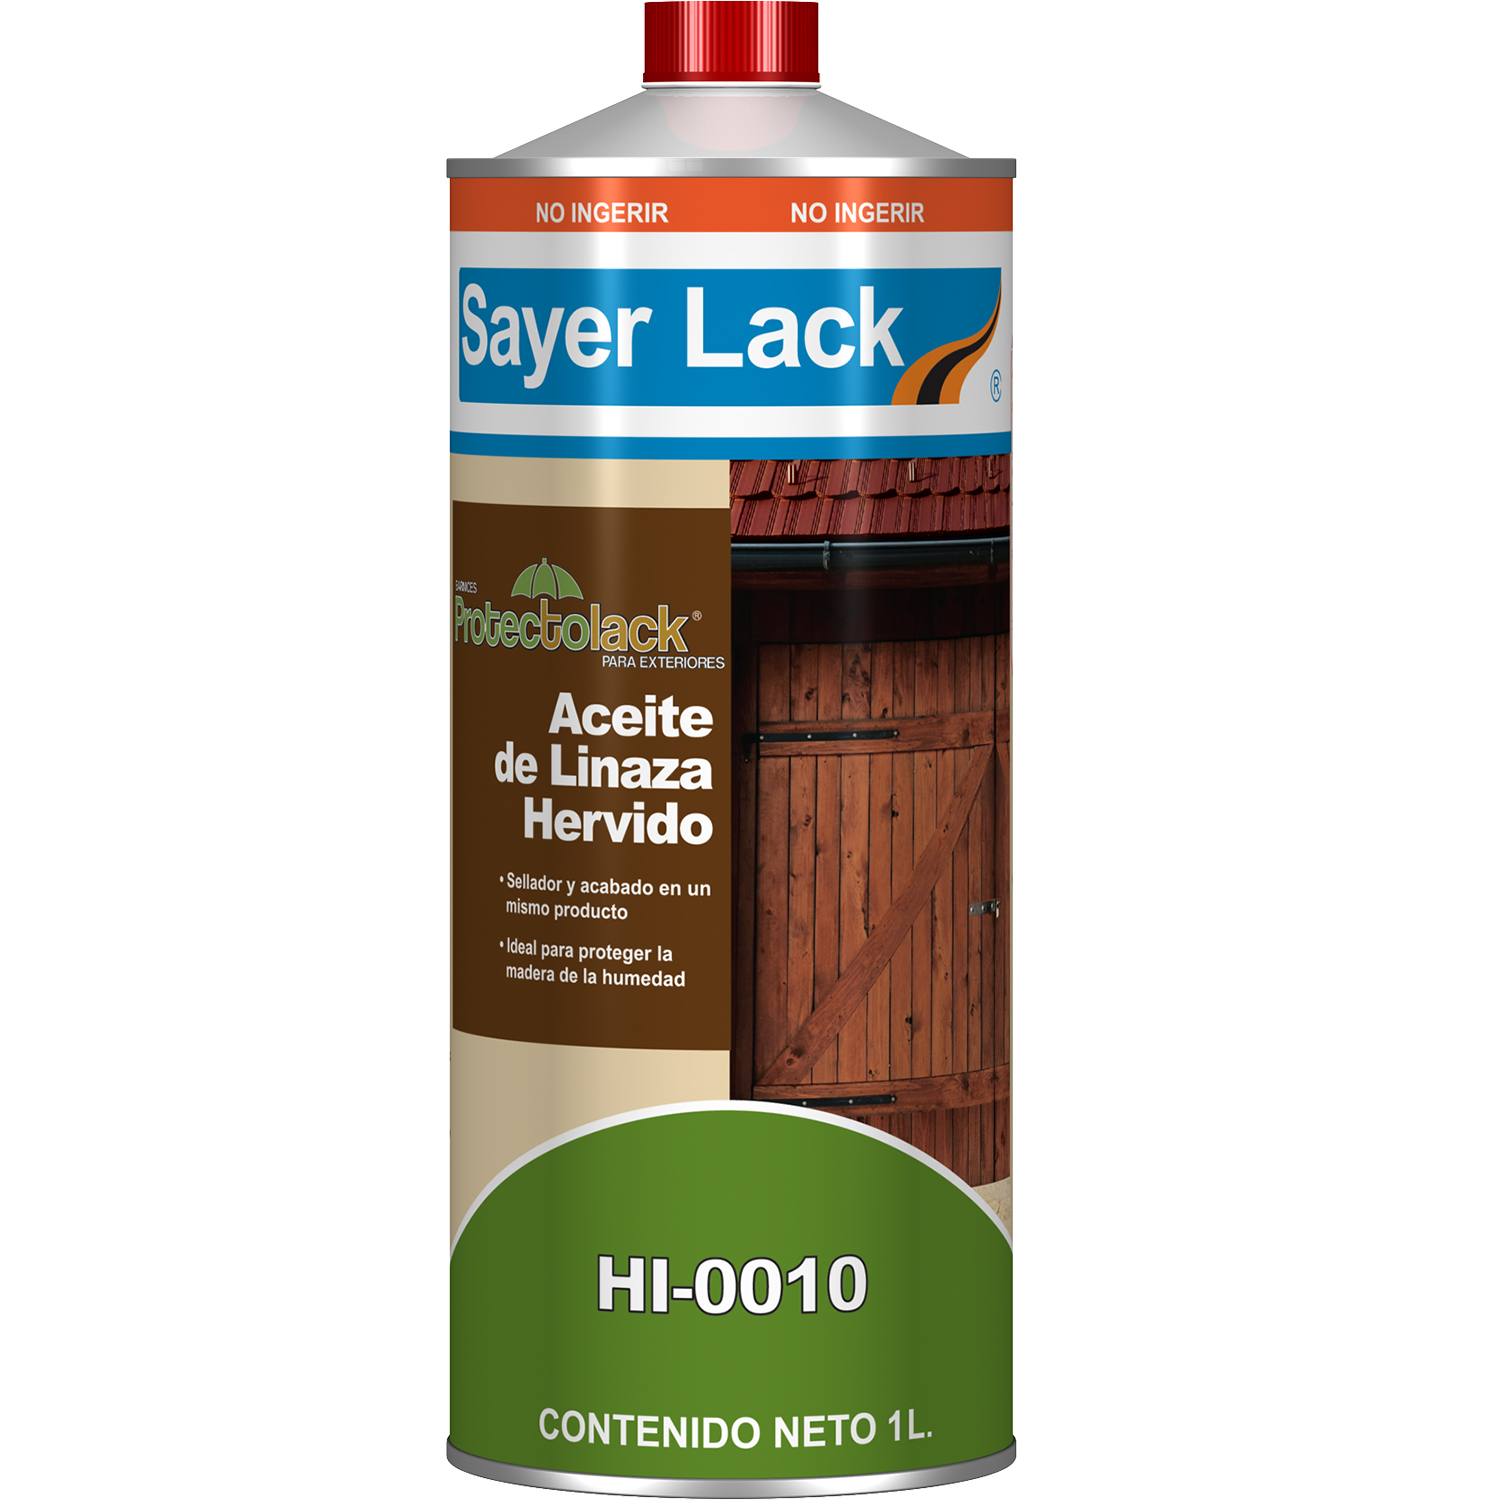  Nordicare Aceite de linaza para madera, aceite de linaza 100%  puro y natural para toda el área interior, aceite de linaza crudo seguro  para alimentos para muebles de madera, subraya la